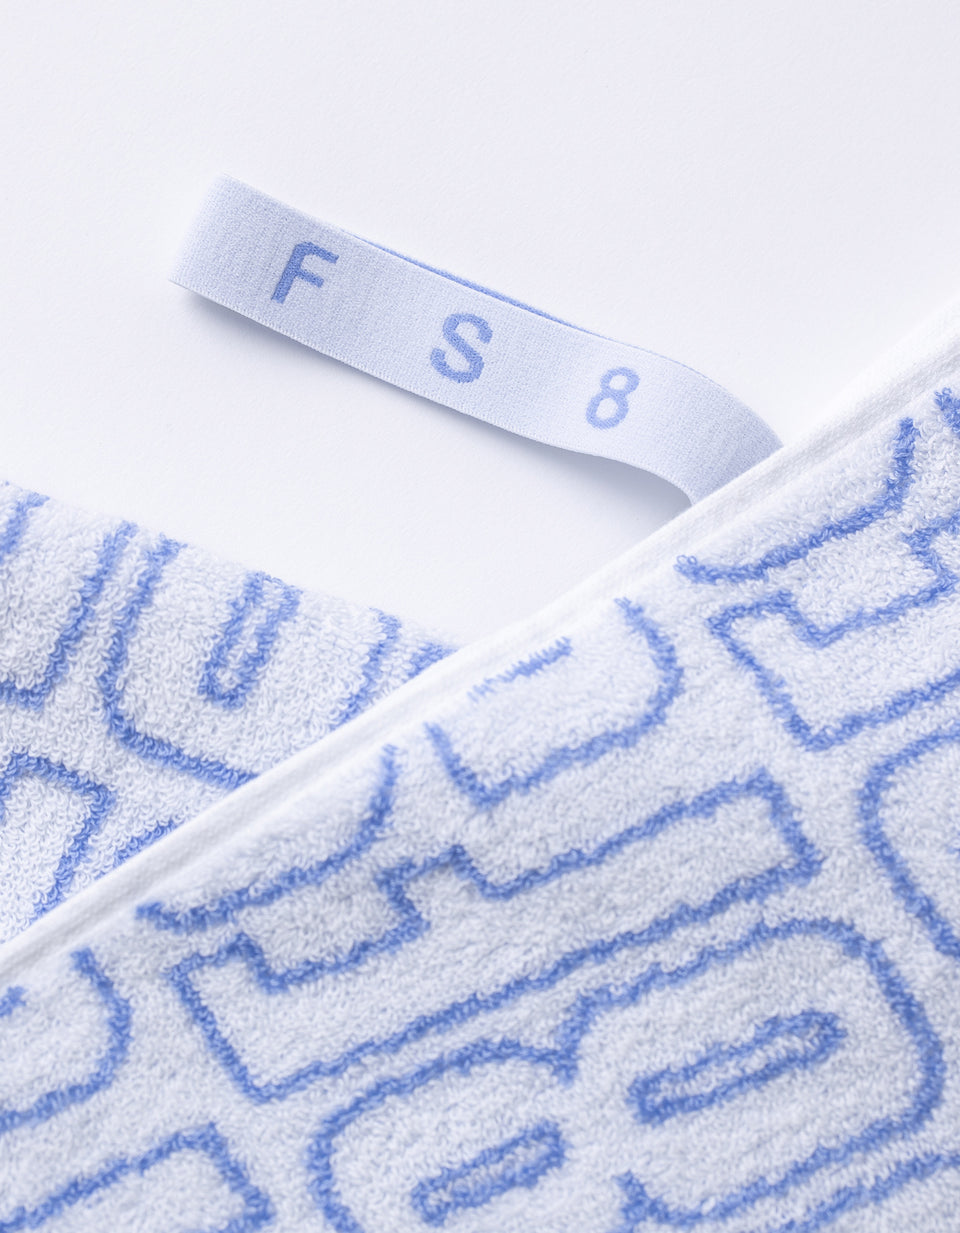 FS8 Accessories Train Towel